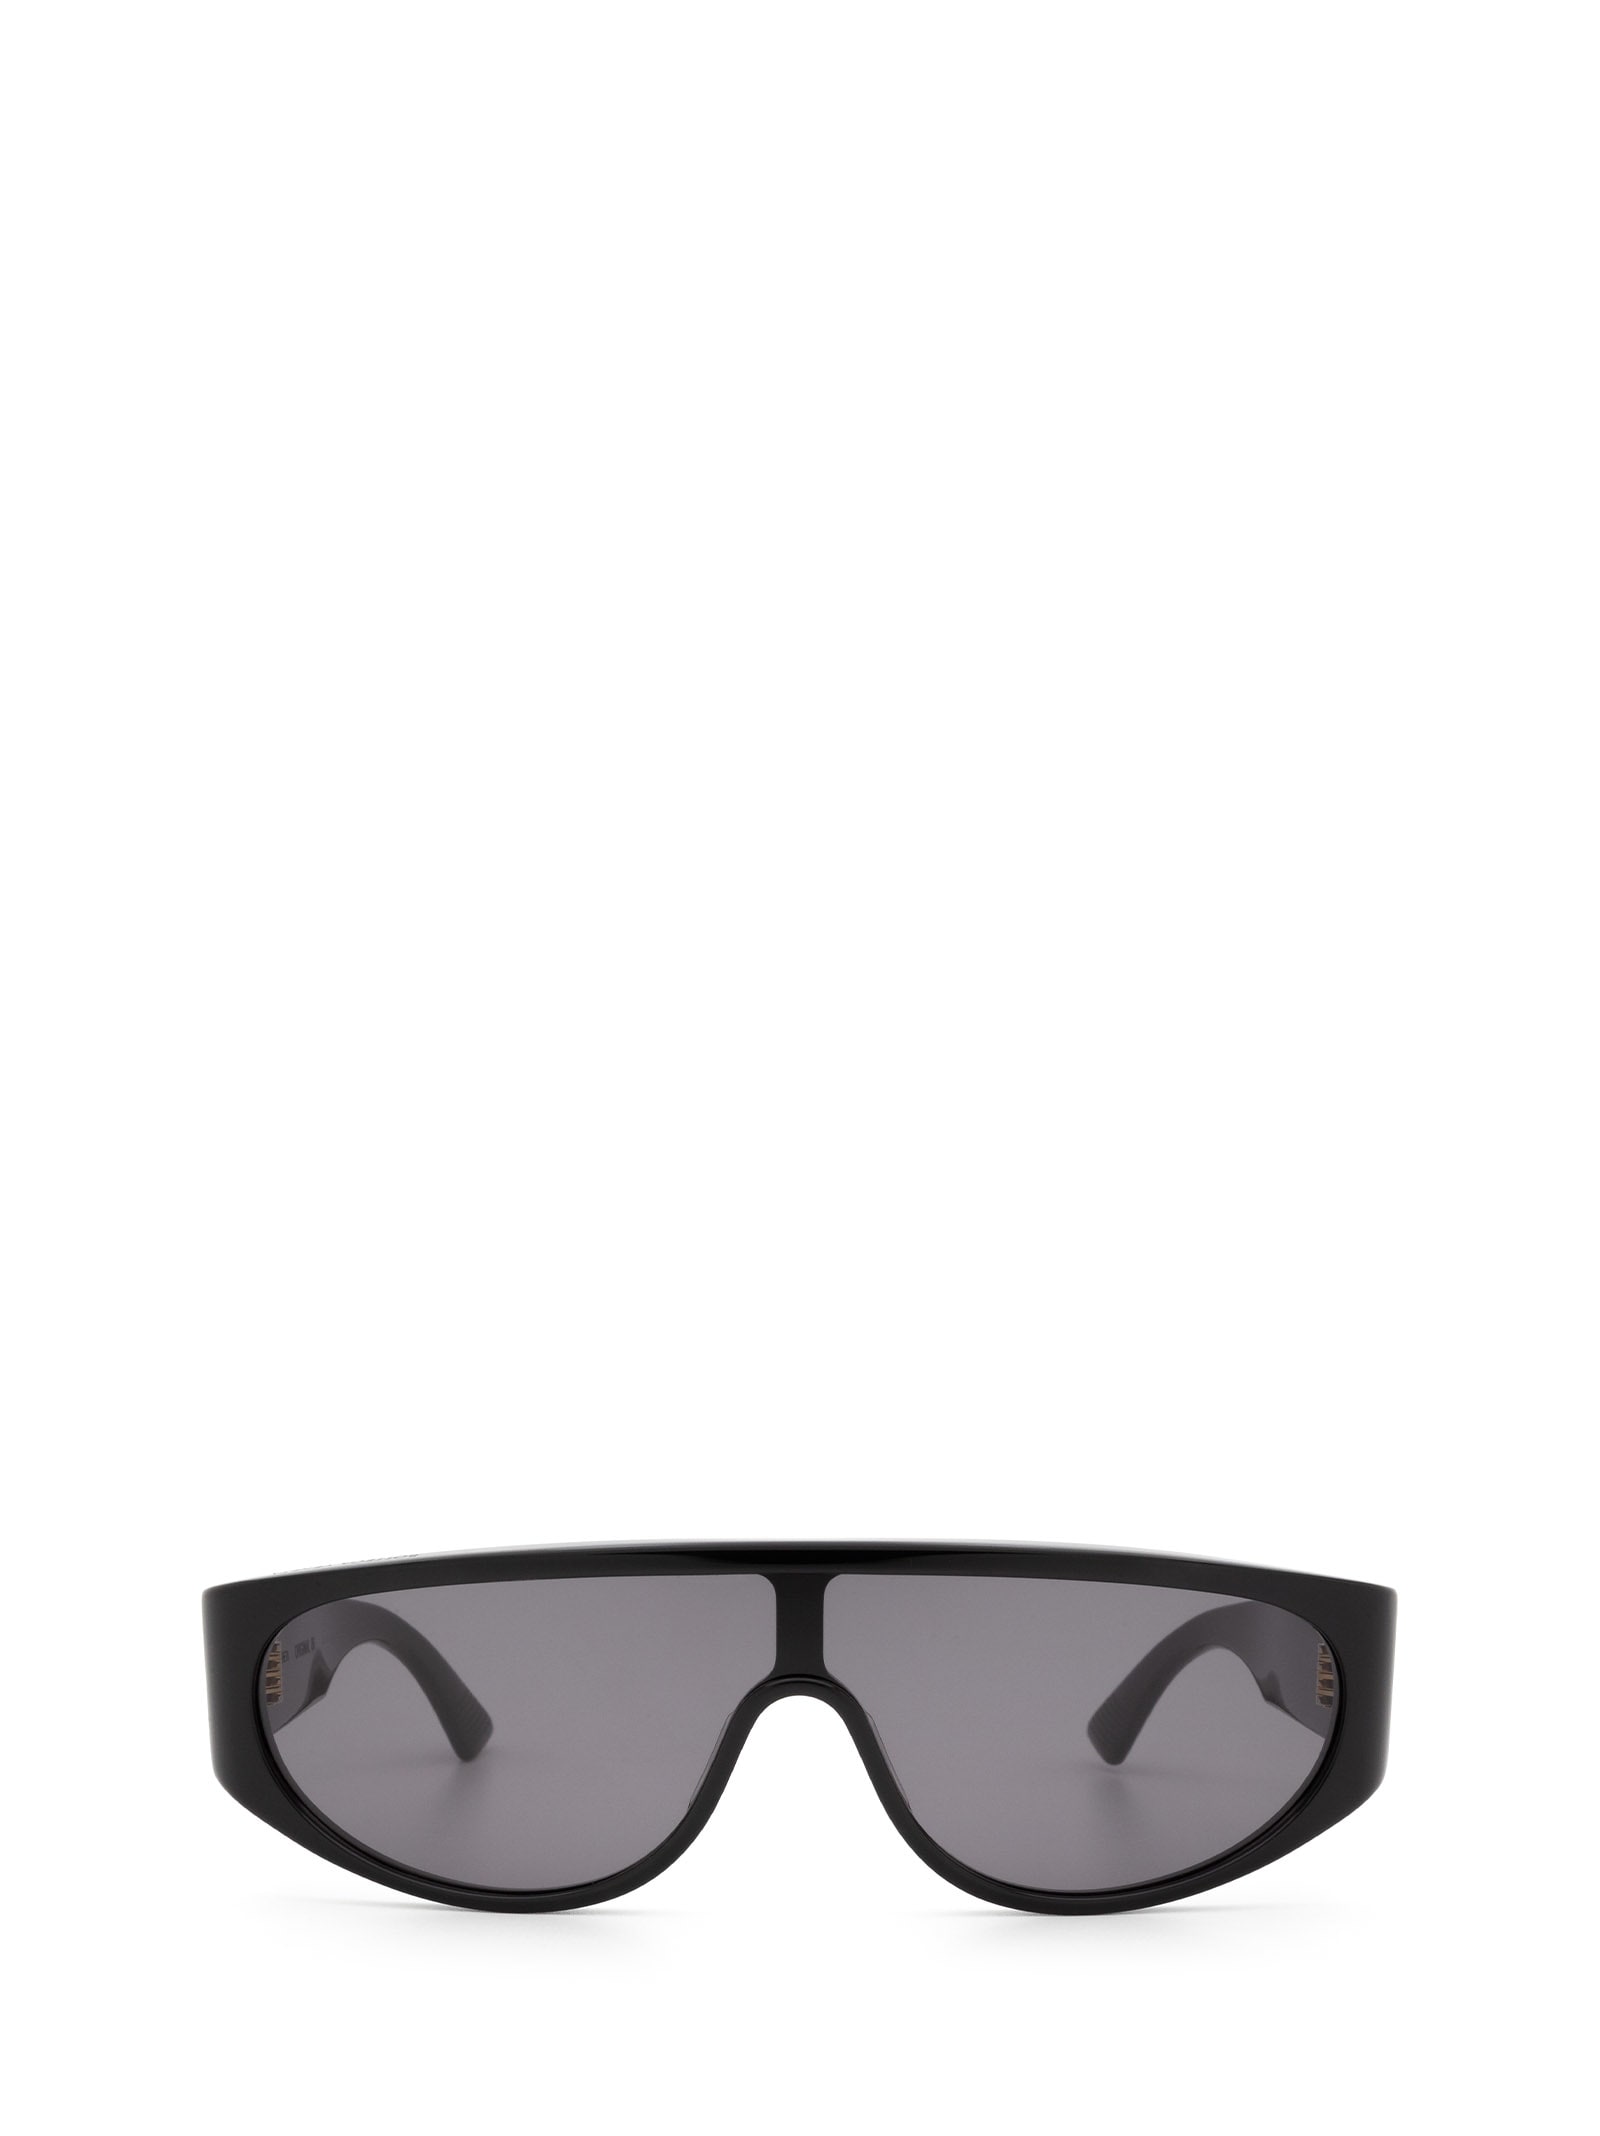 Bottega Veneta Bottega Veneta Bv1027s Black Sunglasses